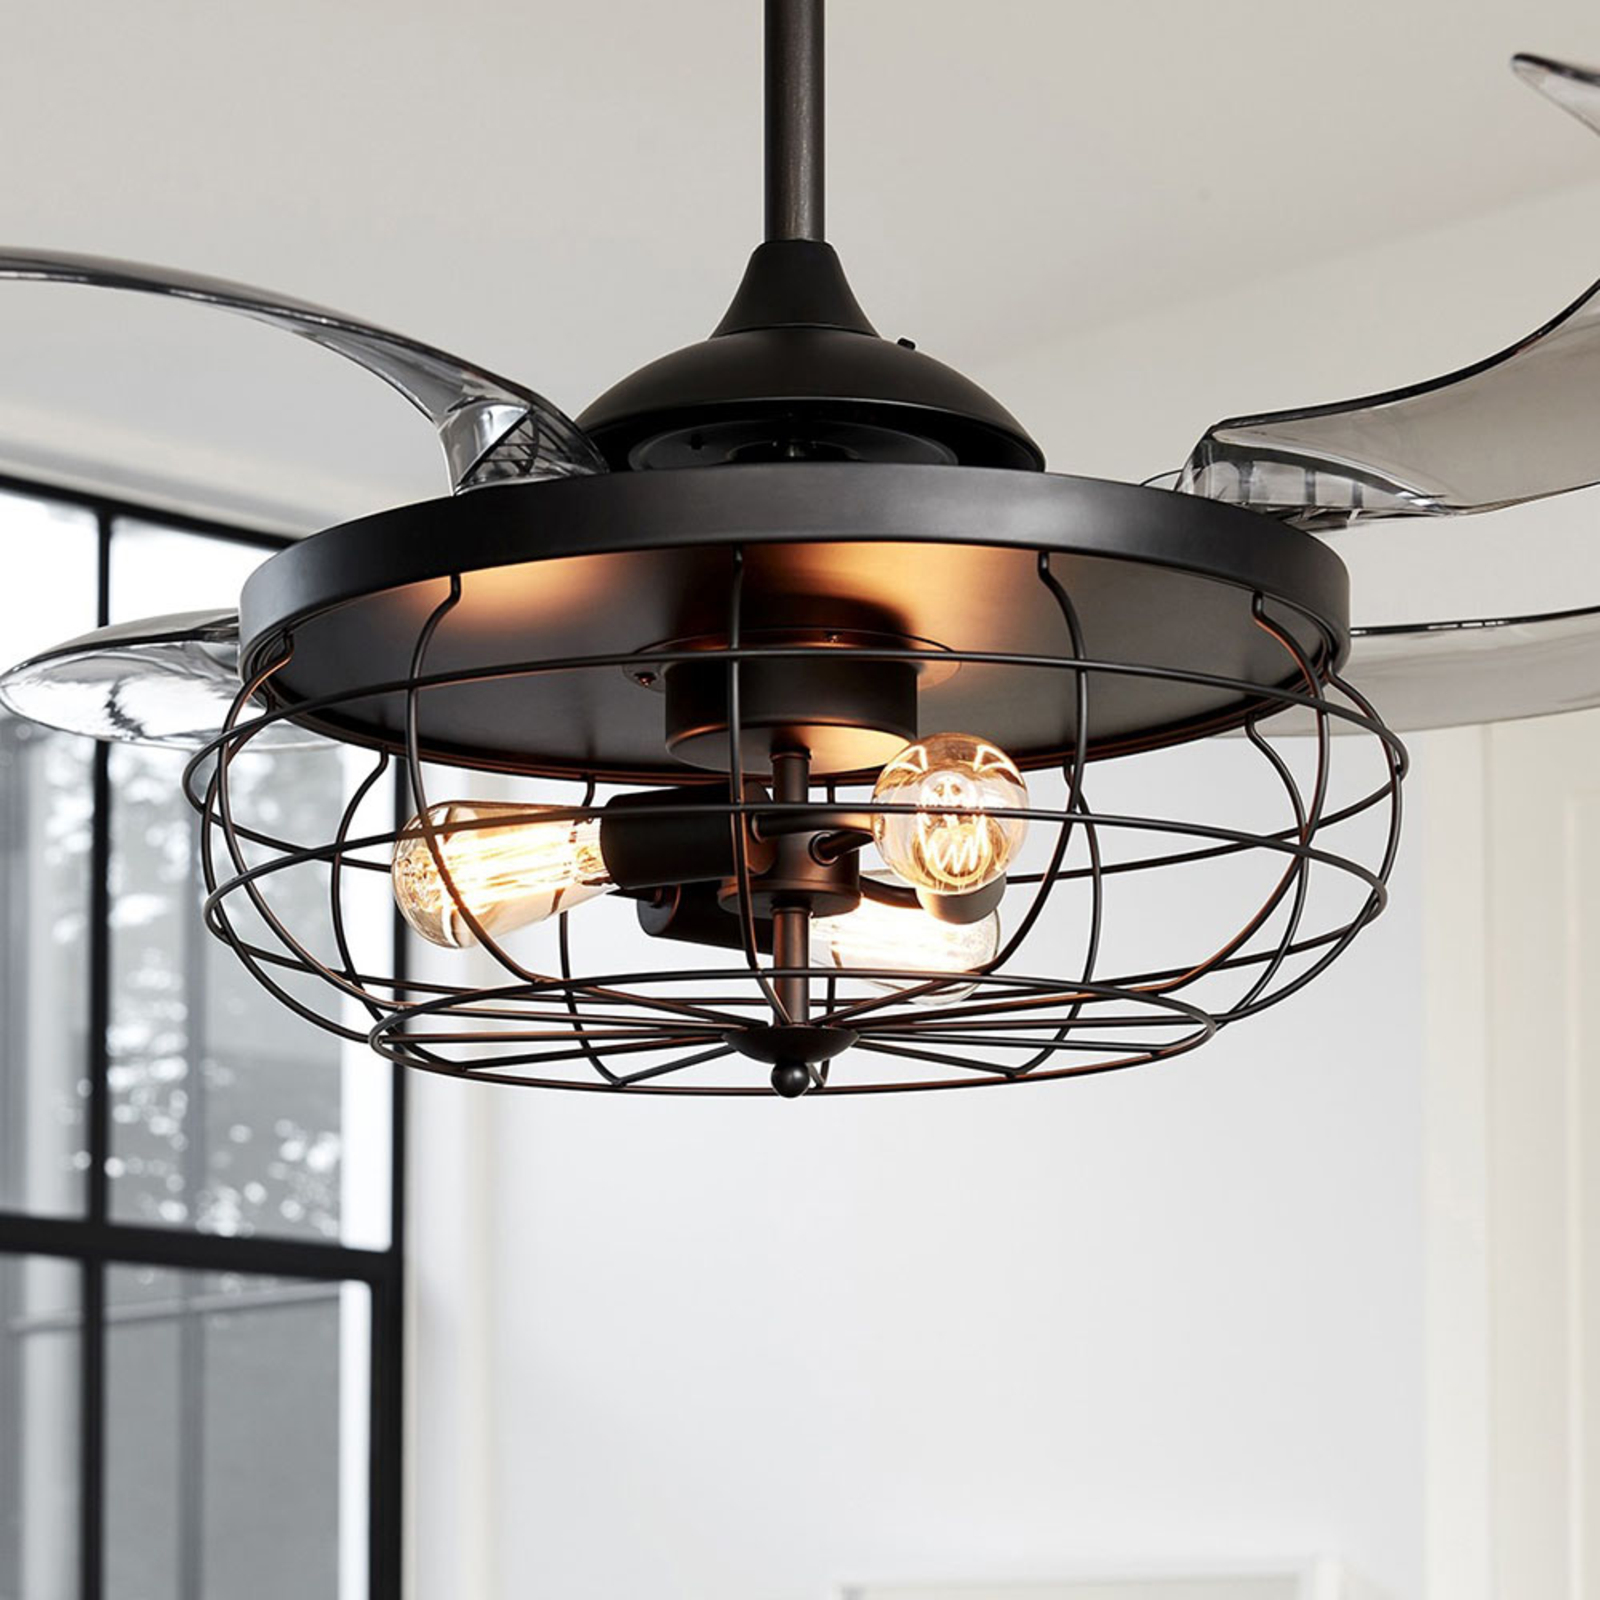 Beacon ceiling fan light Fanaway Industri black quiet